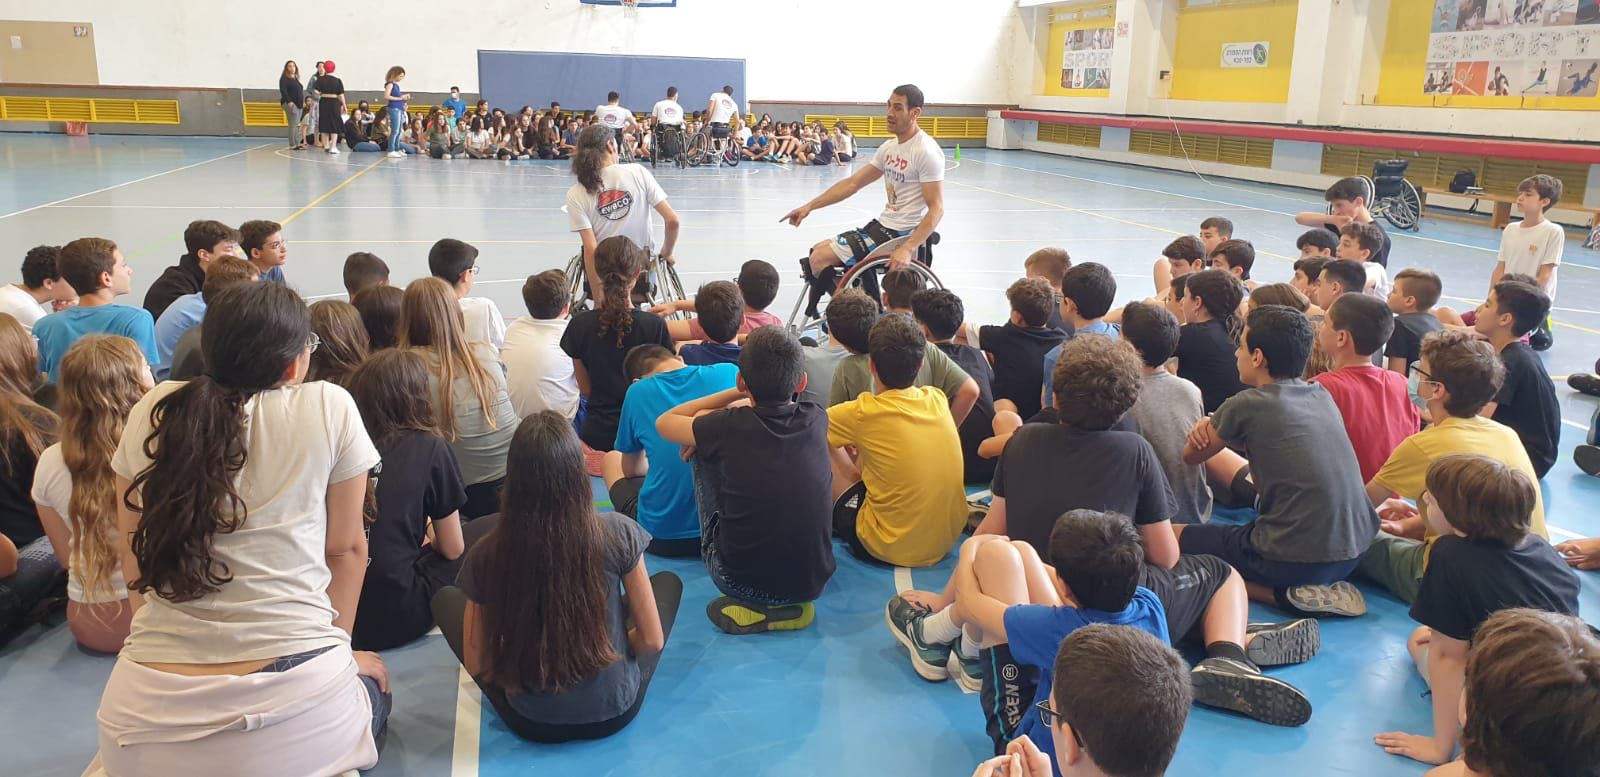 מפגש ייחודי בין תלמידי חטיבת הביינים רמון לבין שחקני כדורסל על גלגלים